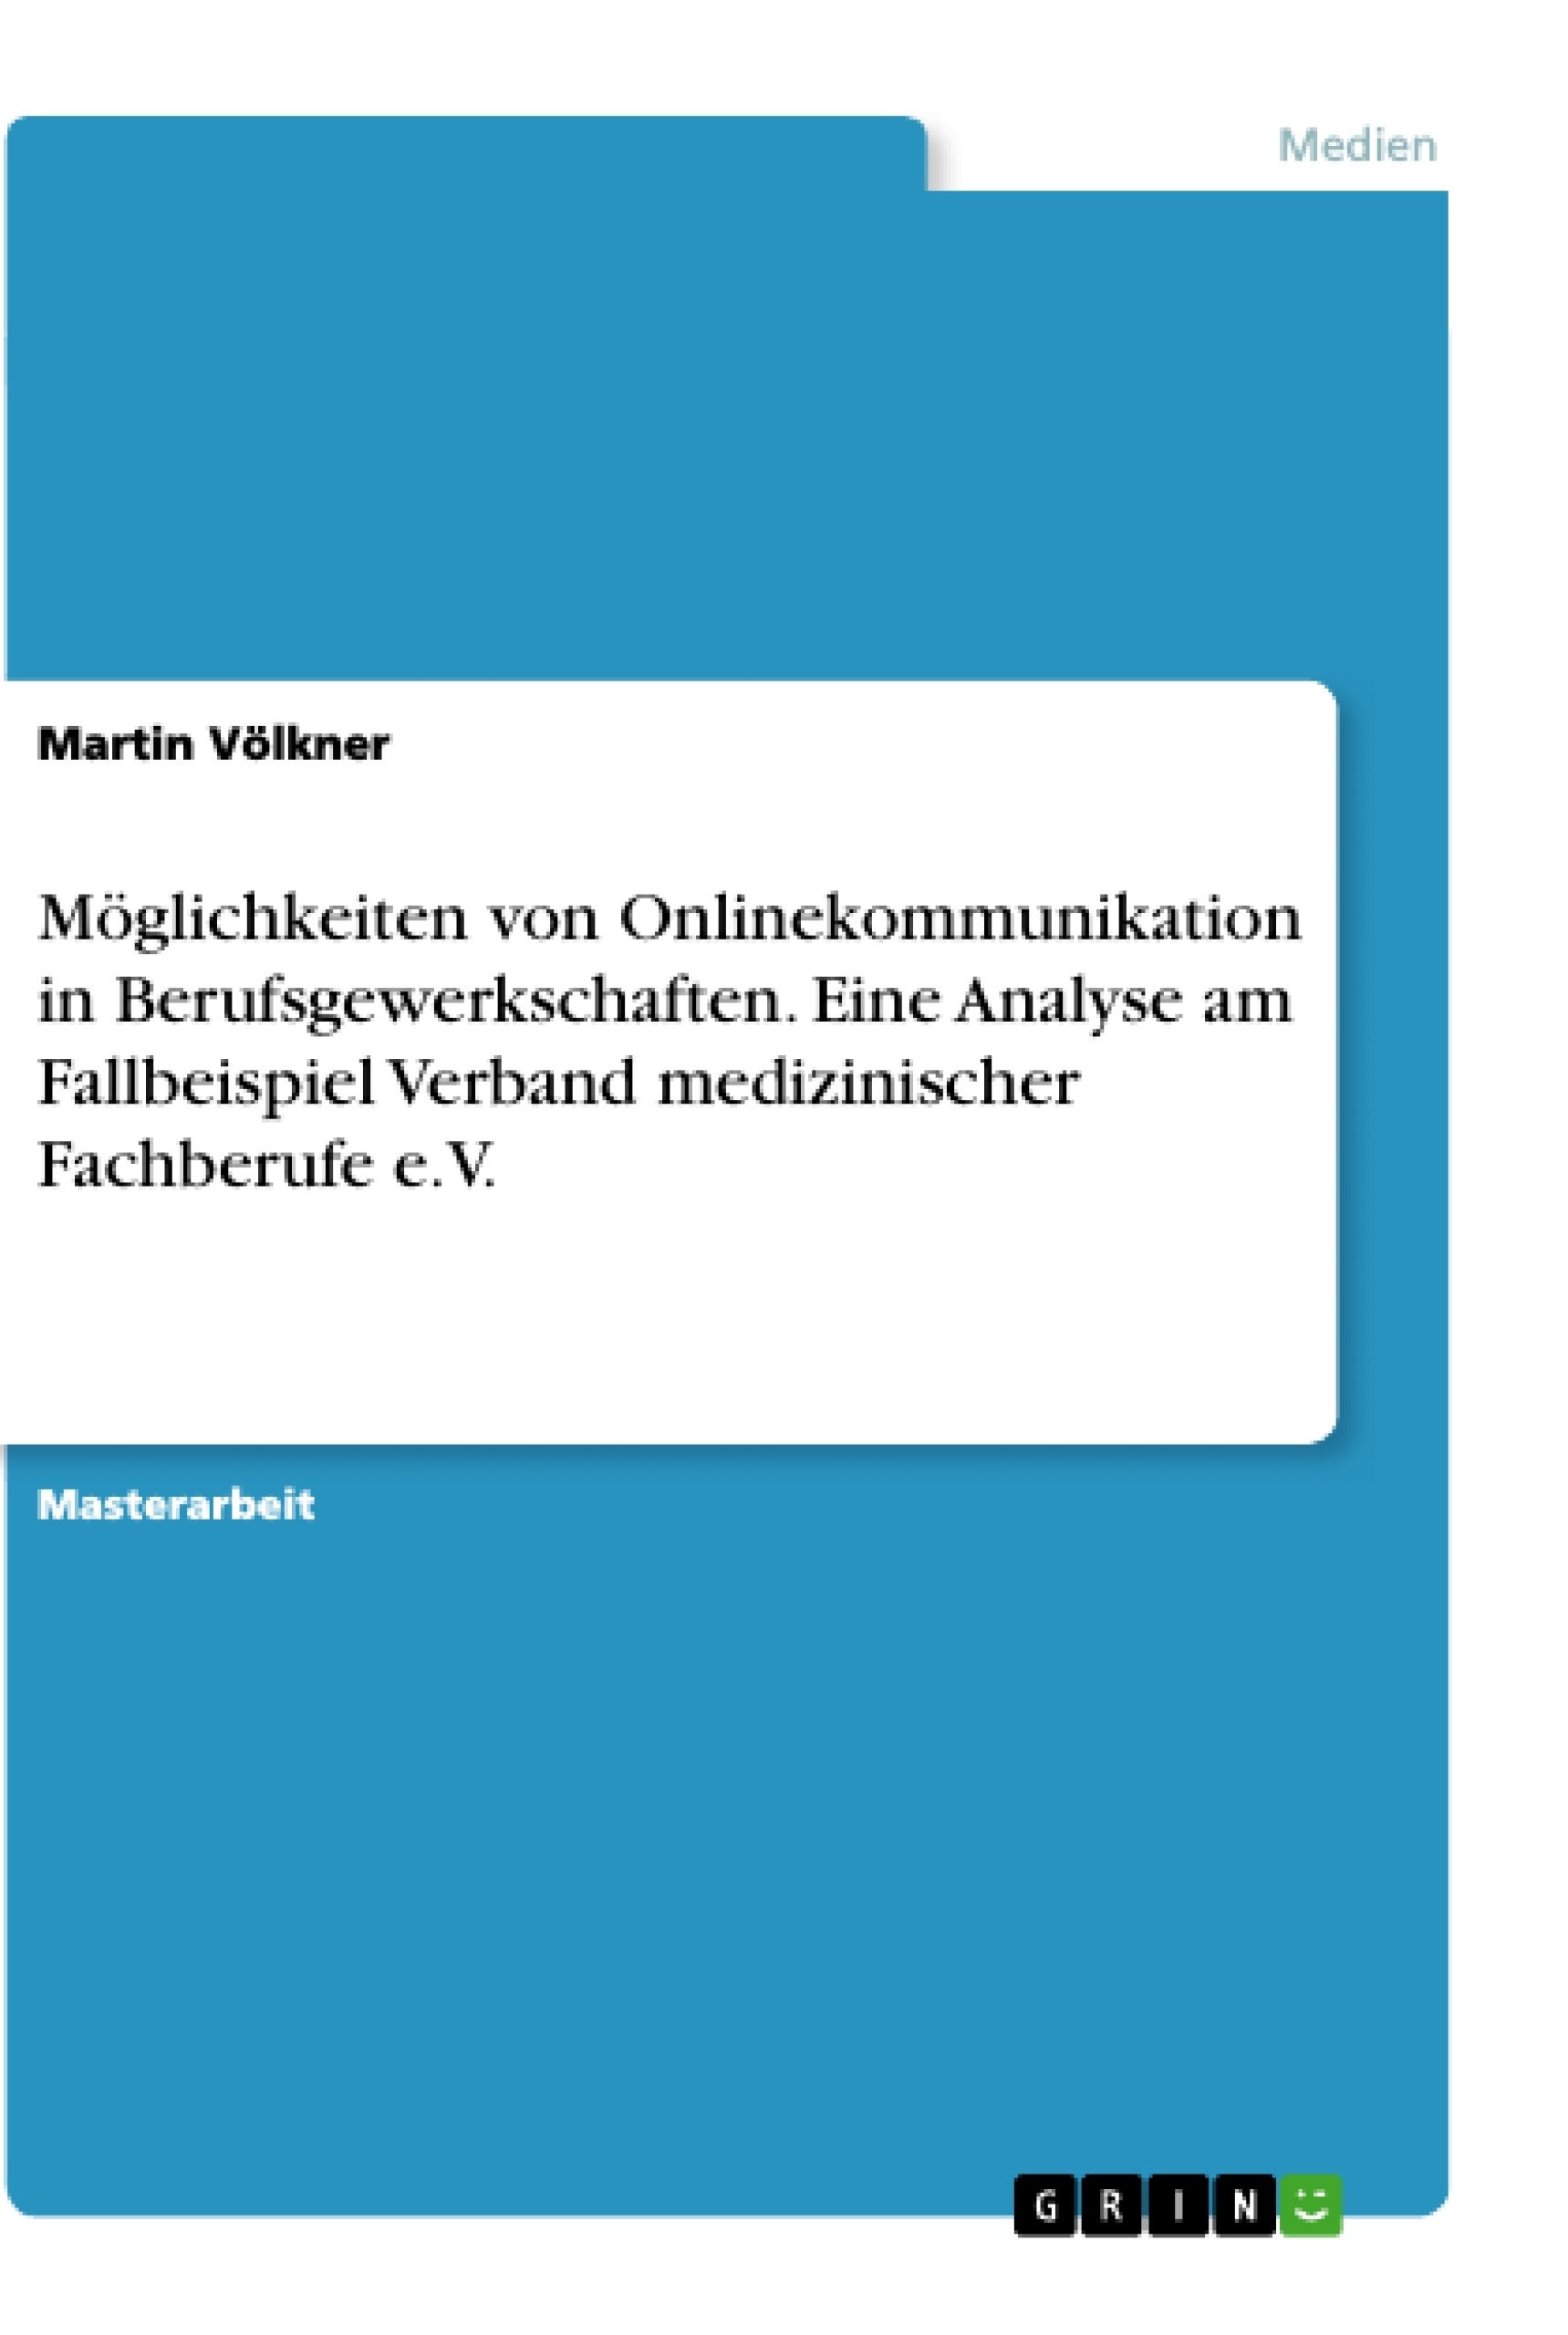 Titel: Möglichkeiten von Onlinekommunikation in Berufsgewerkschaften. Eine Analyse am Fallbeispiel Verband medizinischer Fachberufe e.V.